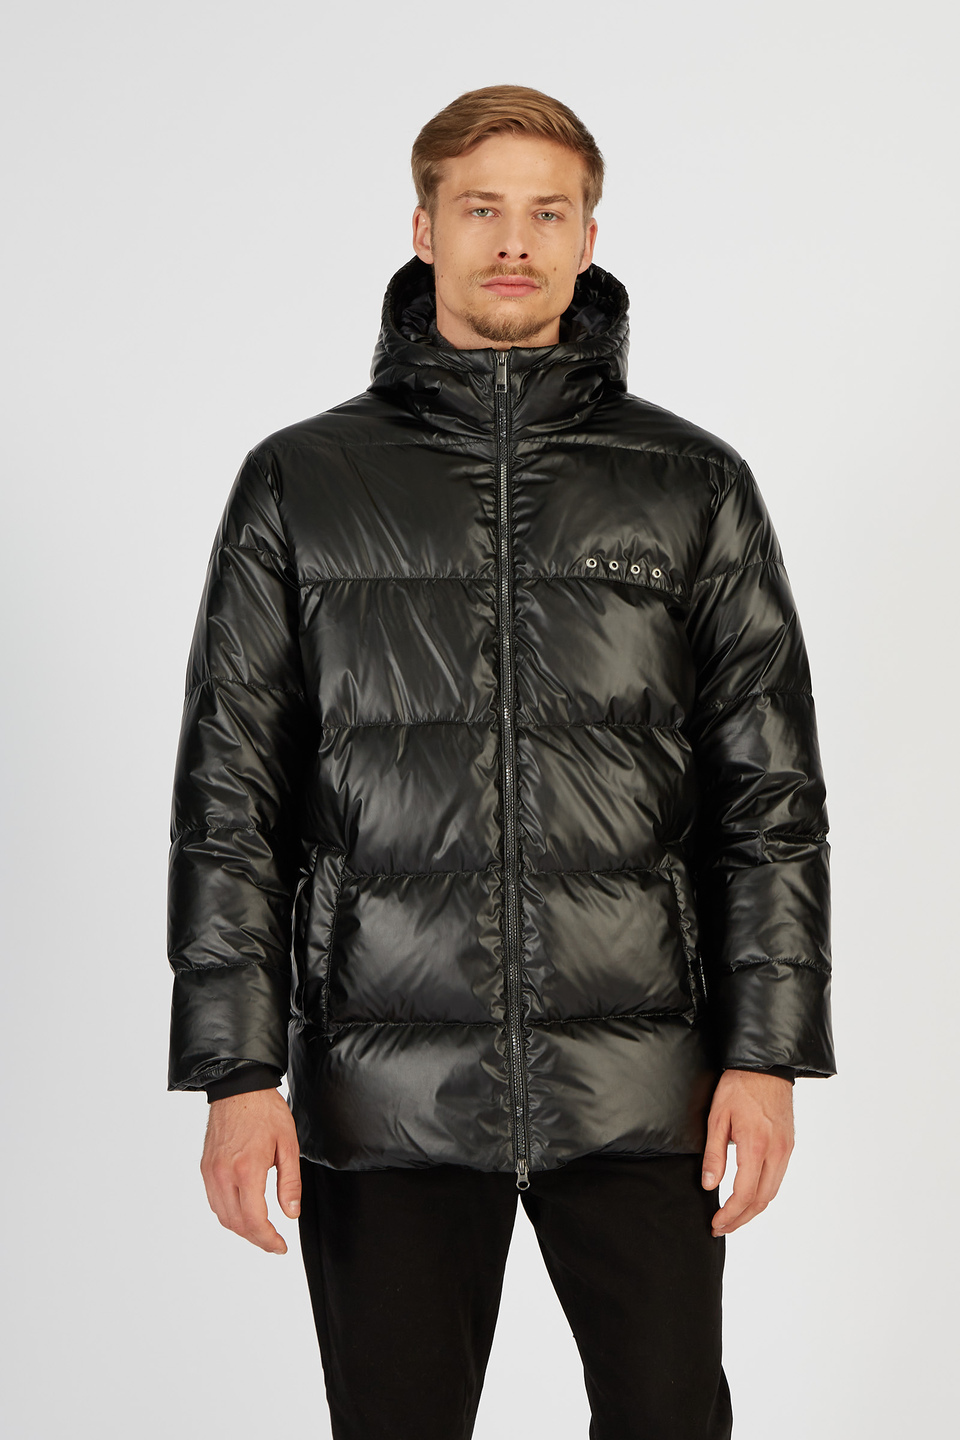 Men’s padded down jacket Jet Set with hood regular fit model | La Martina - Official Online Shop